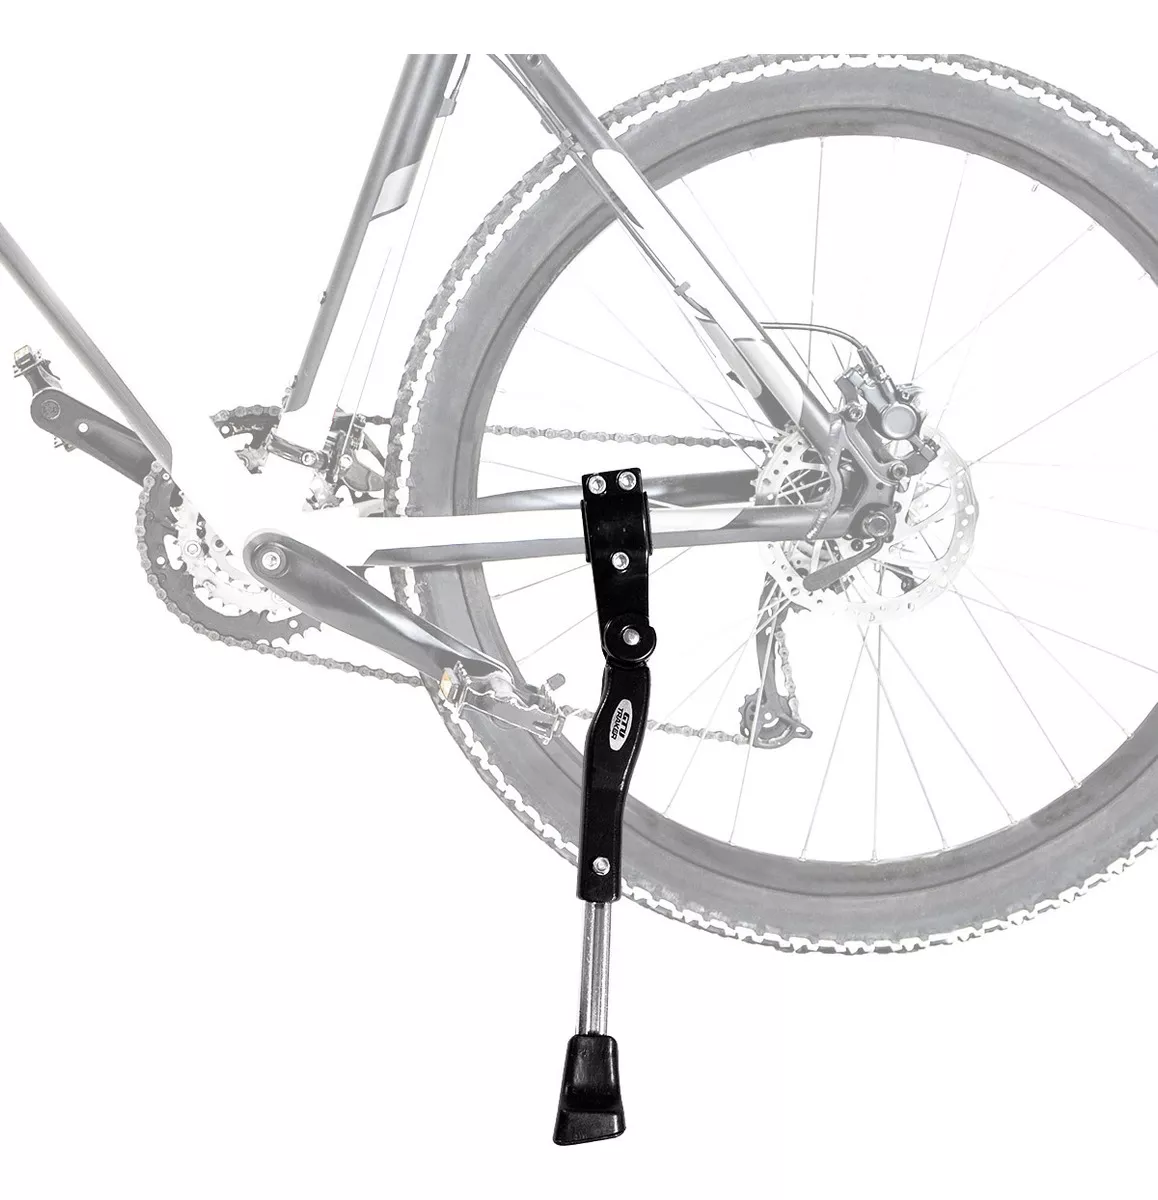 Segunda imagem para pesquisa de descanso bicicleta